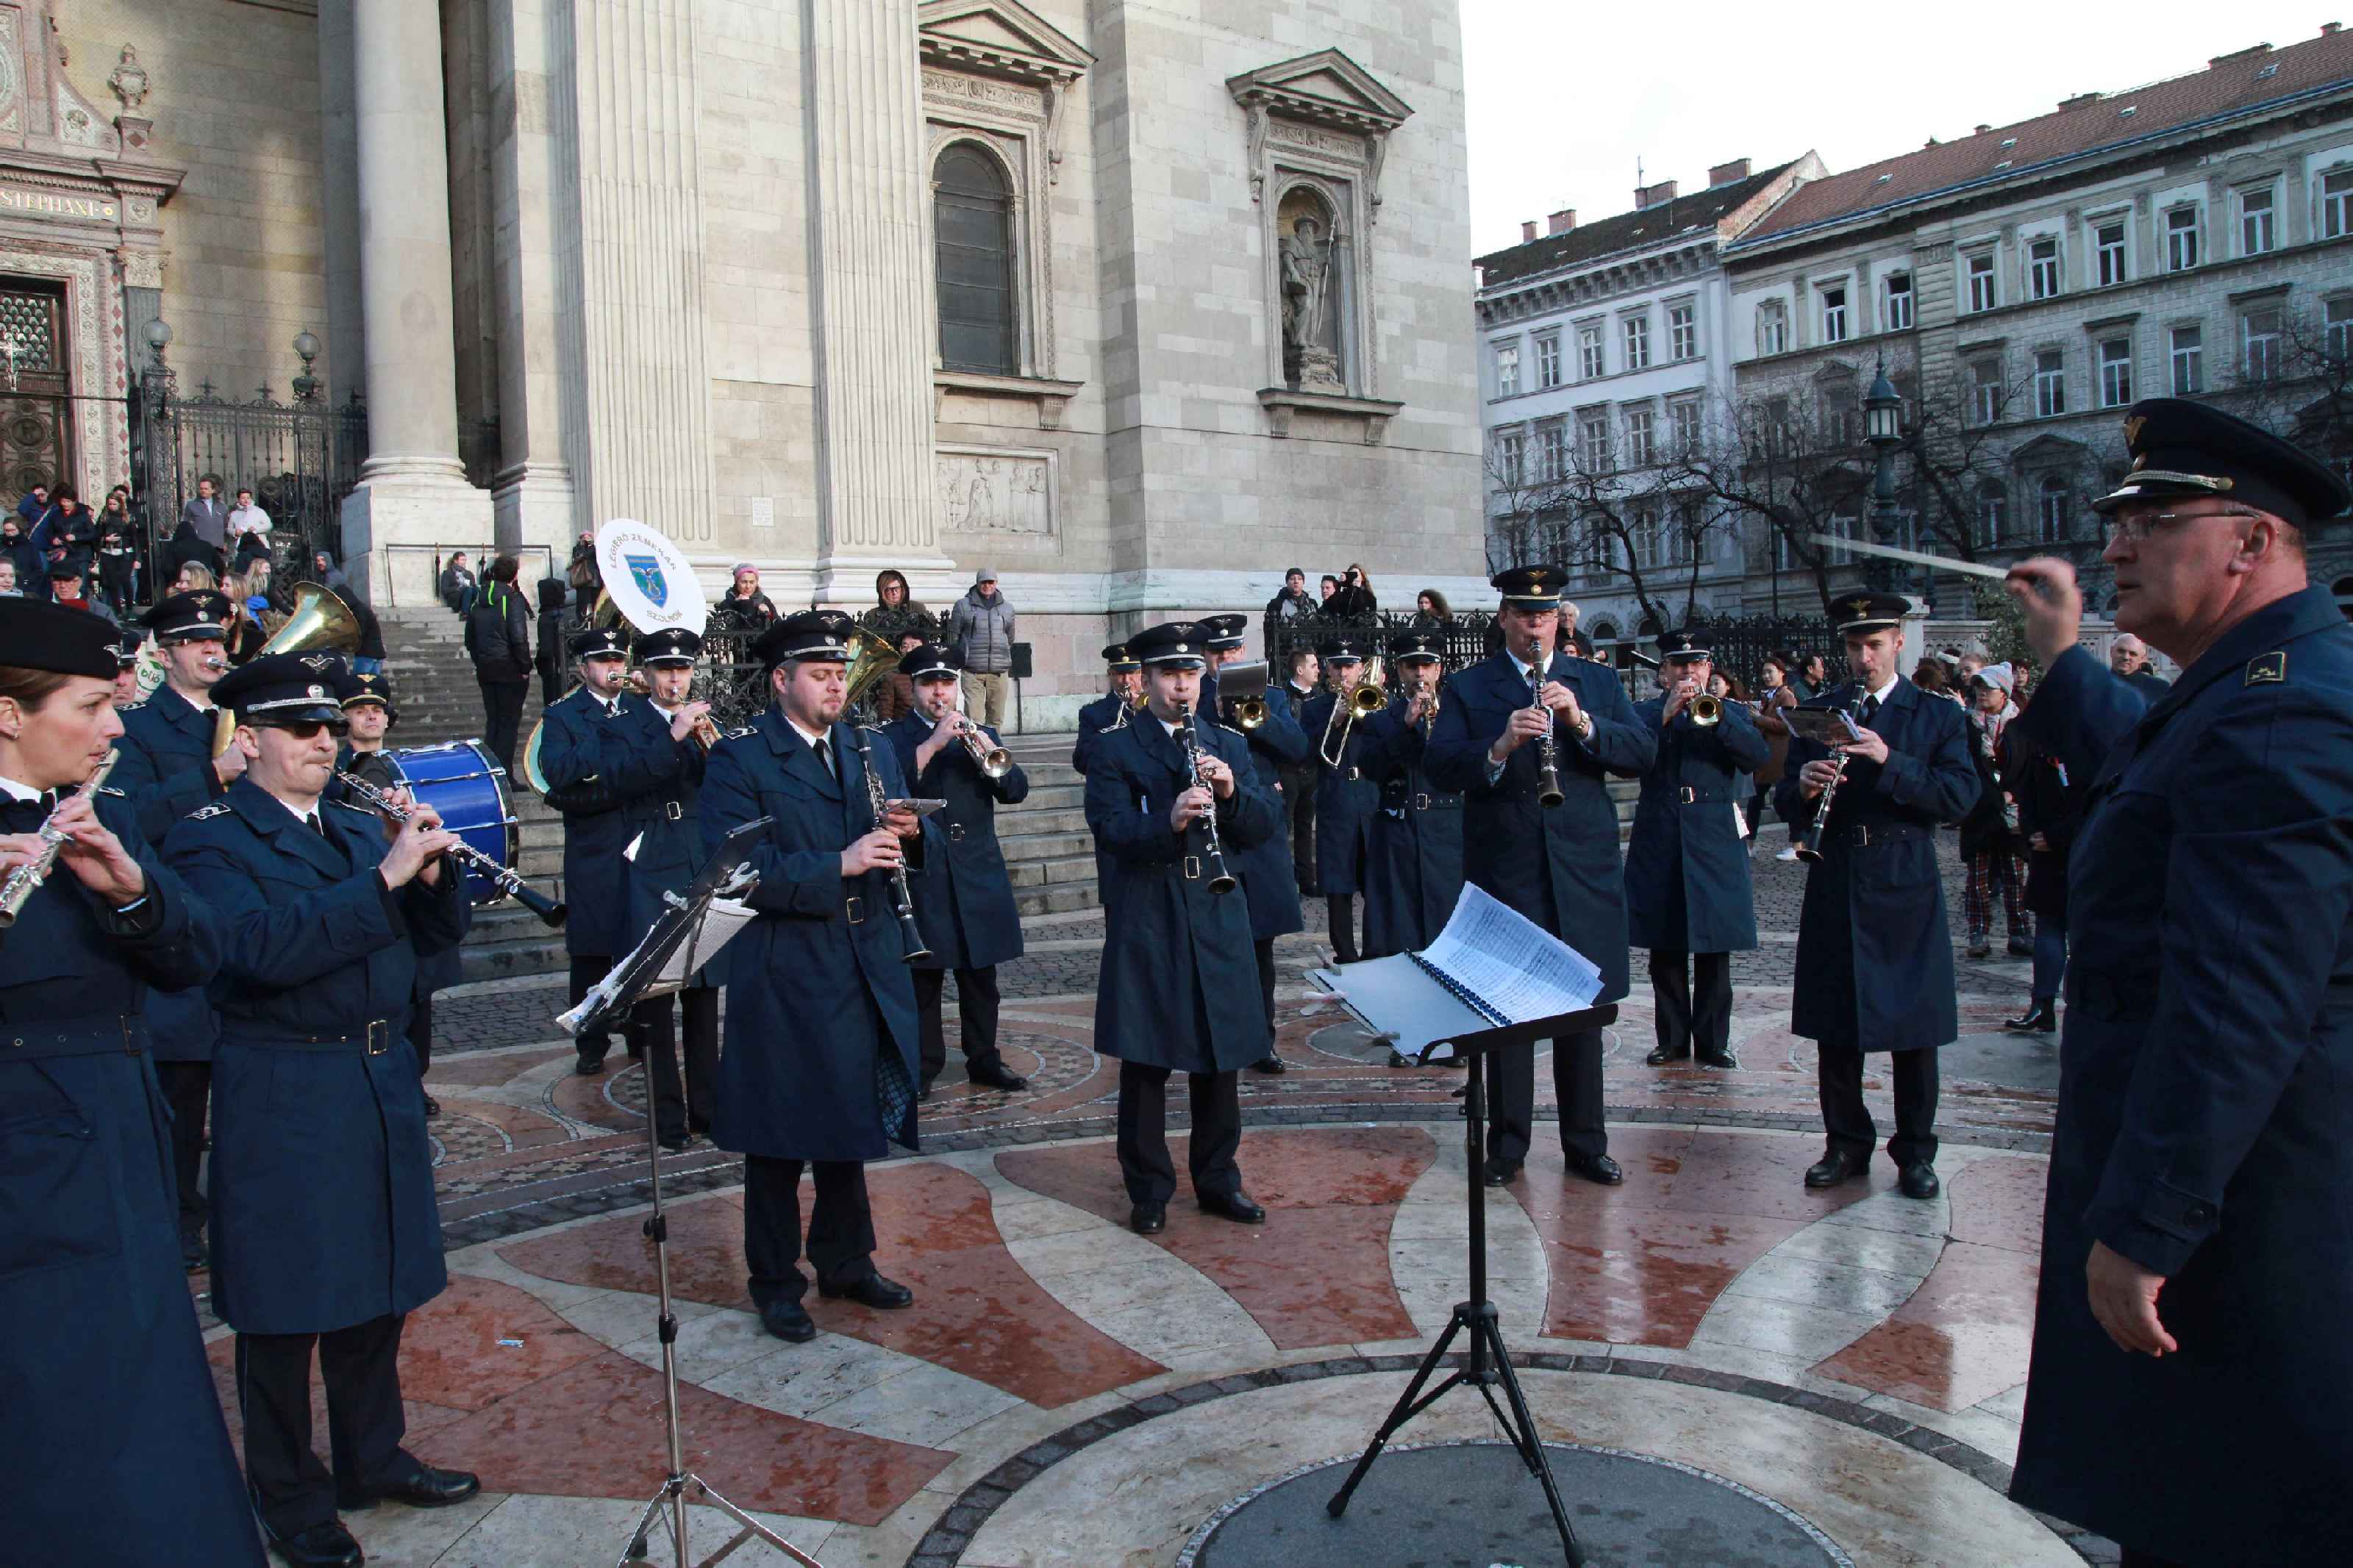 Ingyenes szabadtéri koncertek Budapesten és az egész országban: jön a Bach Mindenkinek Fesztivál